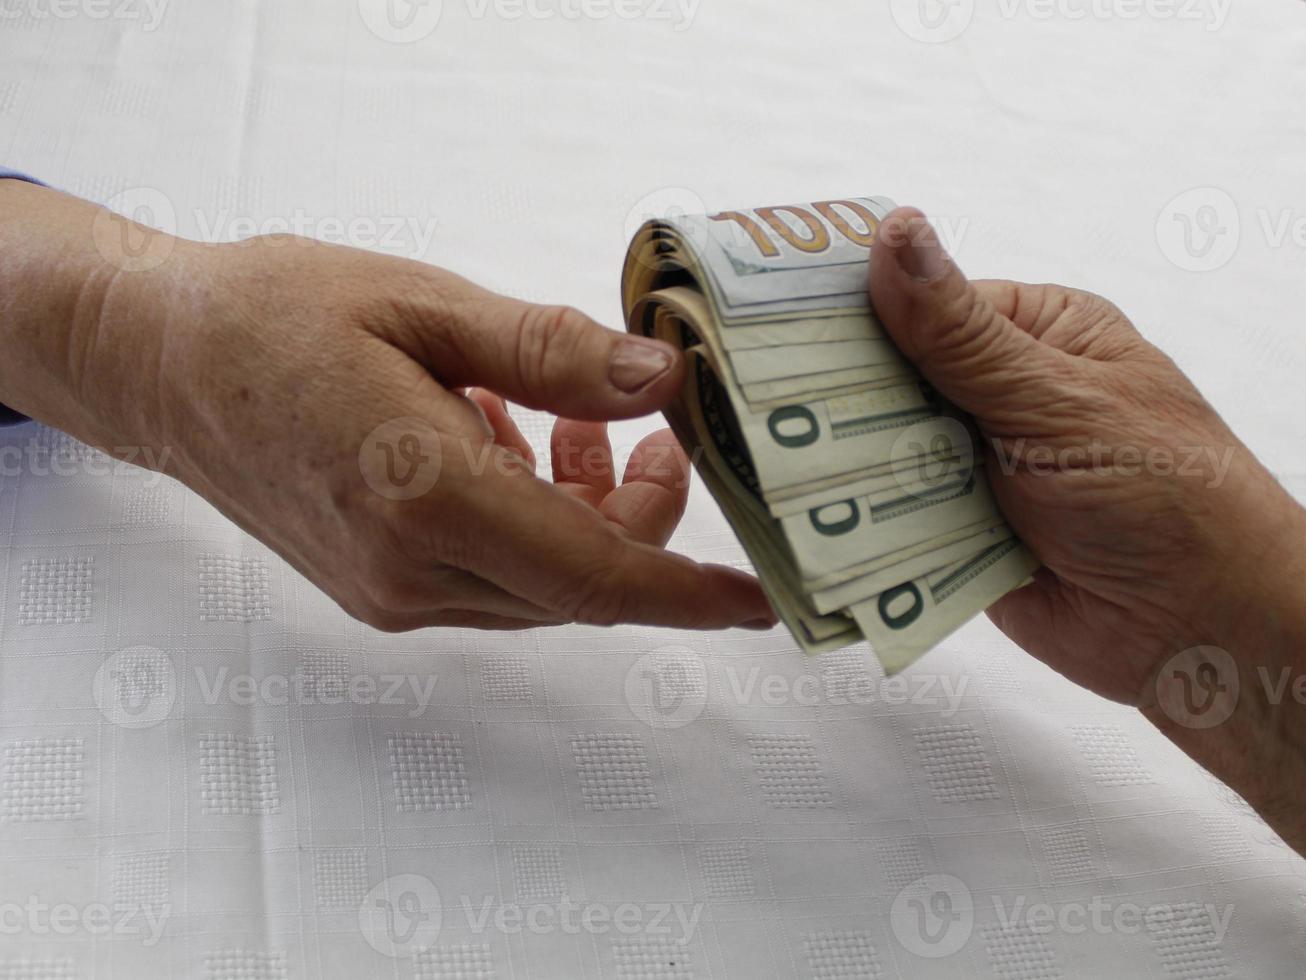 Fotografía para temas de economía y finanzas con dinero en dólares estadounidenses. foto